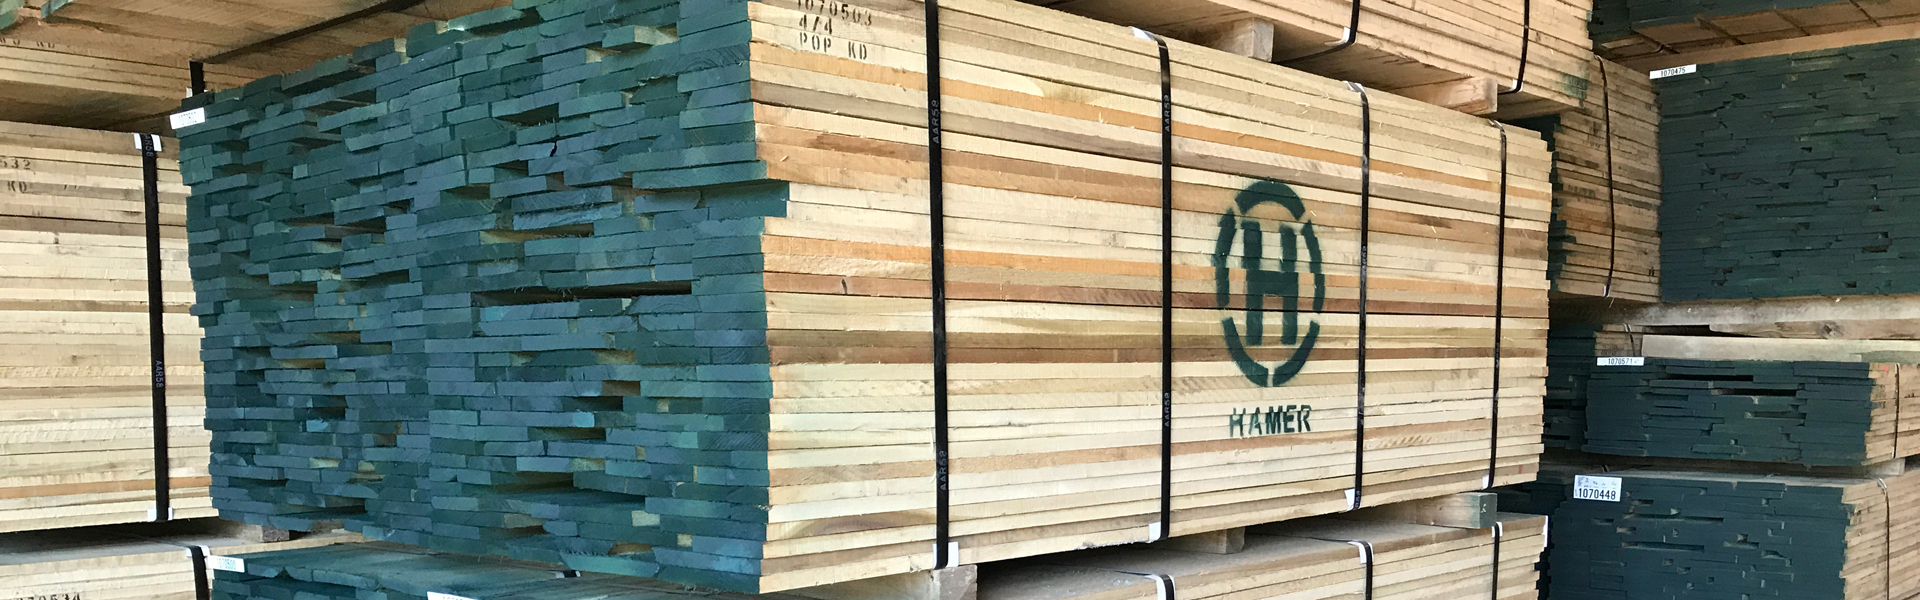 Hamer stacked lumber